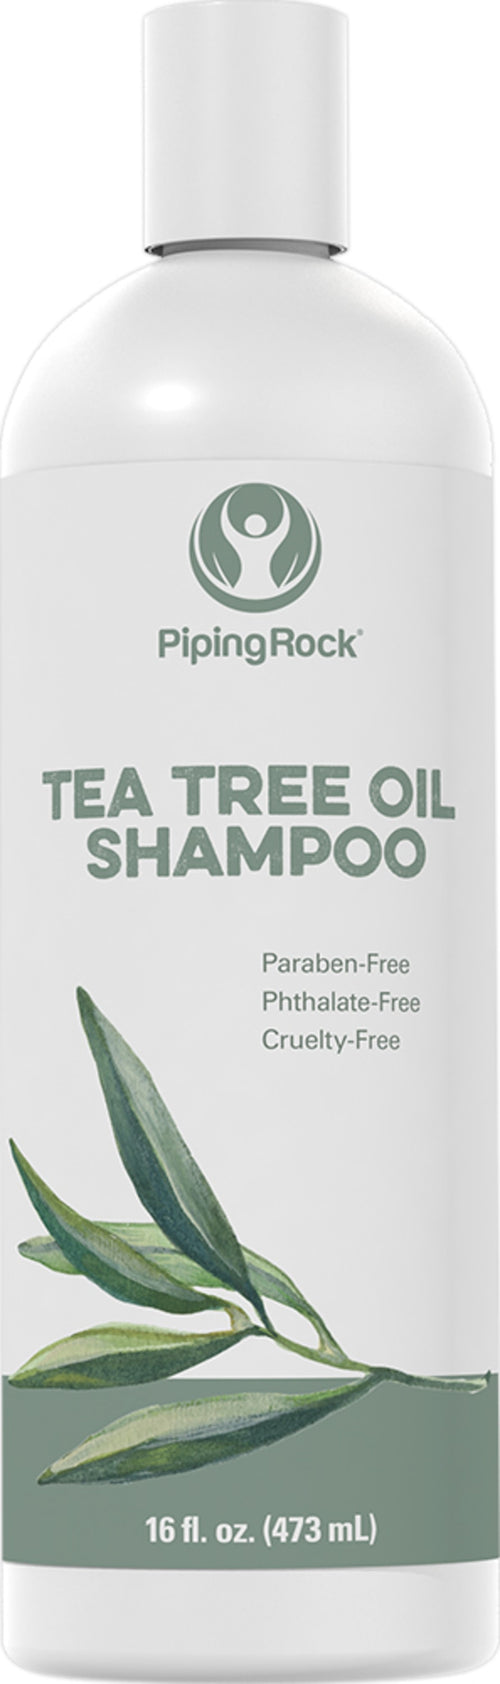 Shampoo Tea Tree Oil 16 fl oz 473 mL Bottiglia    